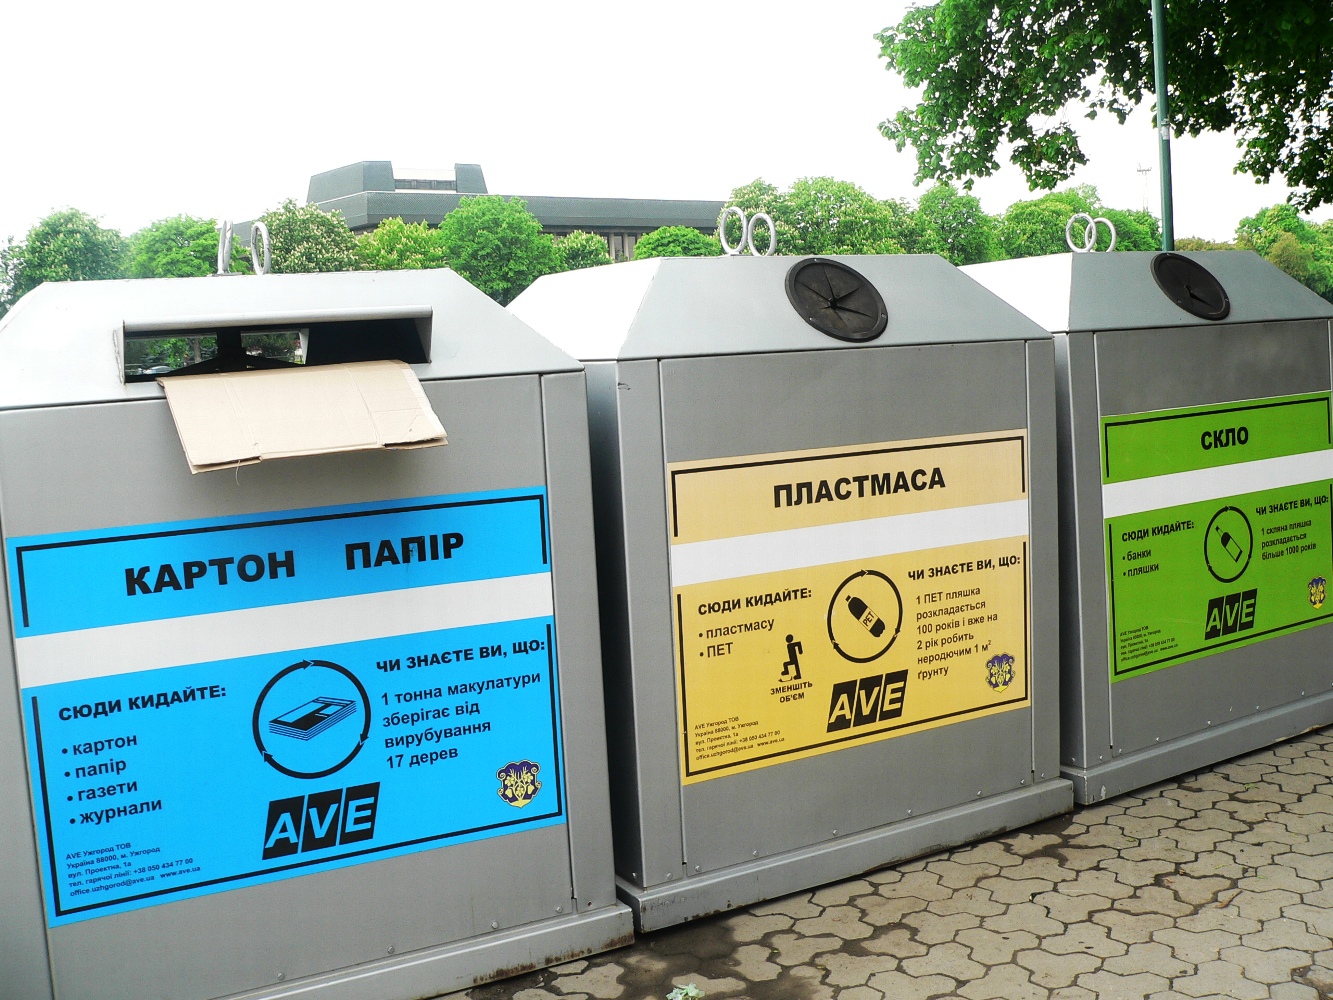 Ужгородців закликають папір, пластик та скло викидати окремо – в місті зявились нові контейнери для сортування сміття (ФОТО)